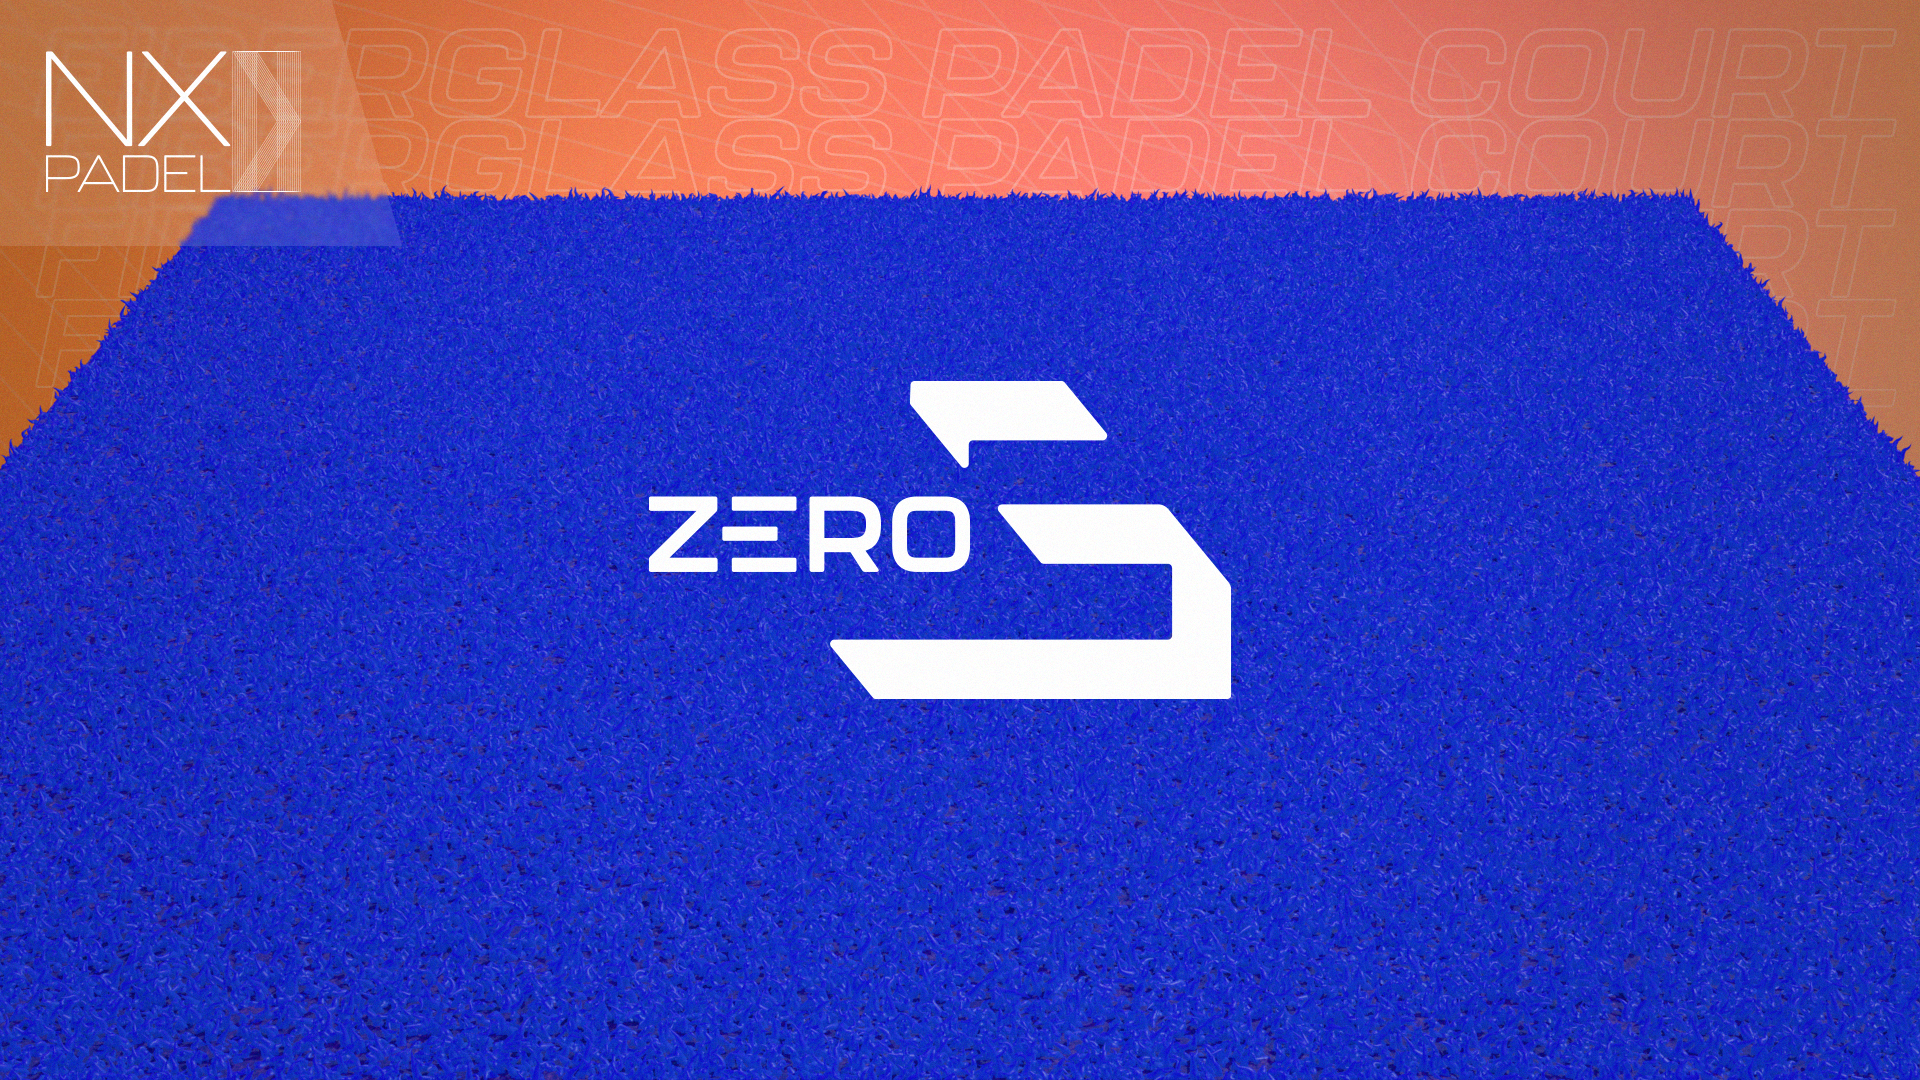 NXPadel ha lanzado ZeroS, la moqueta de pádel de nueva generación